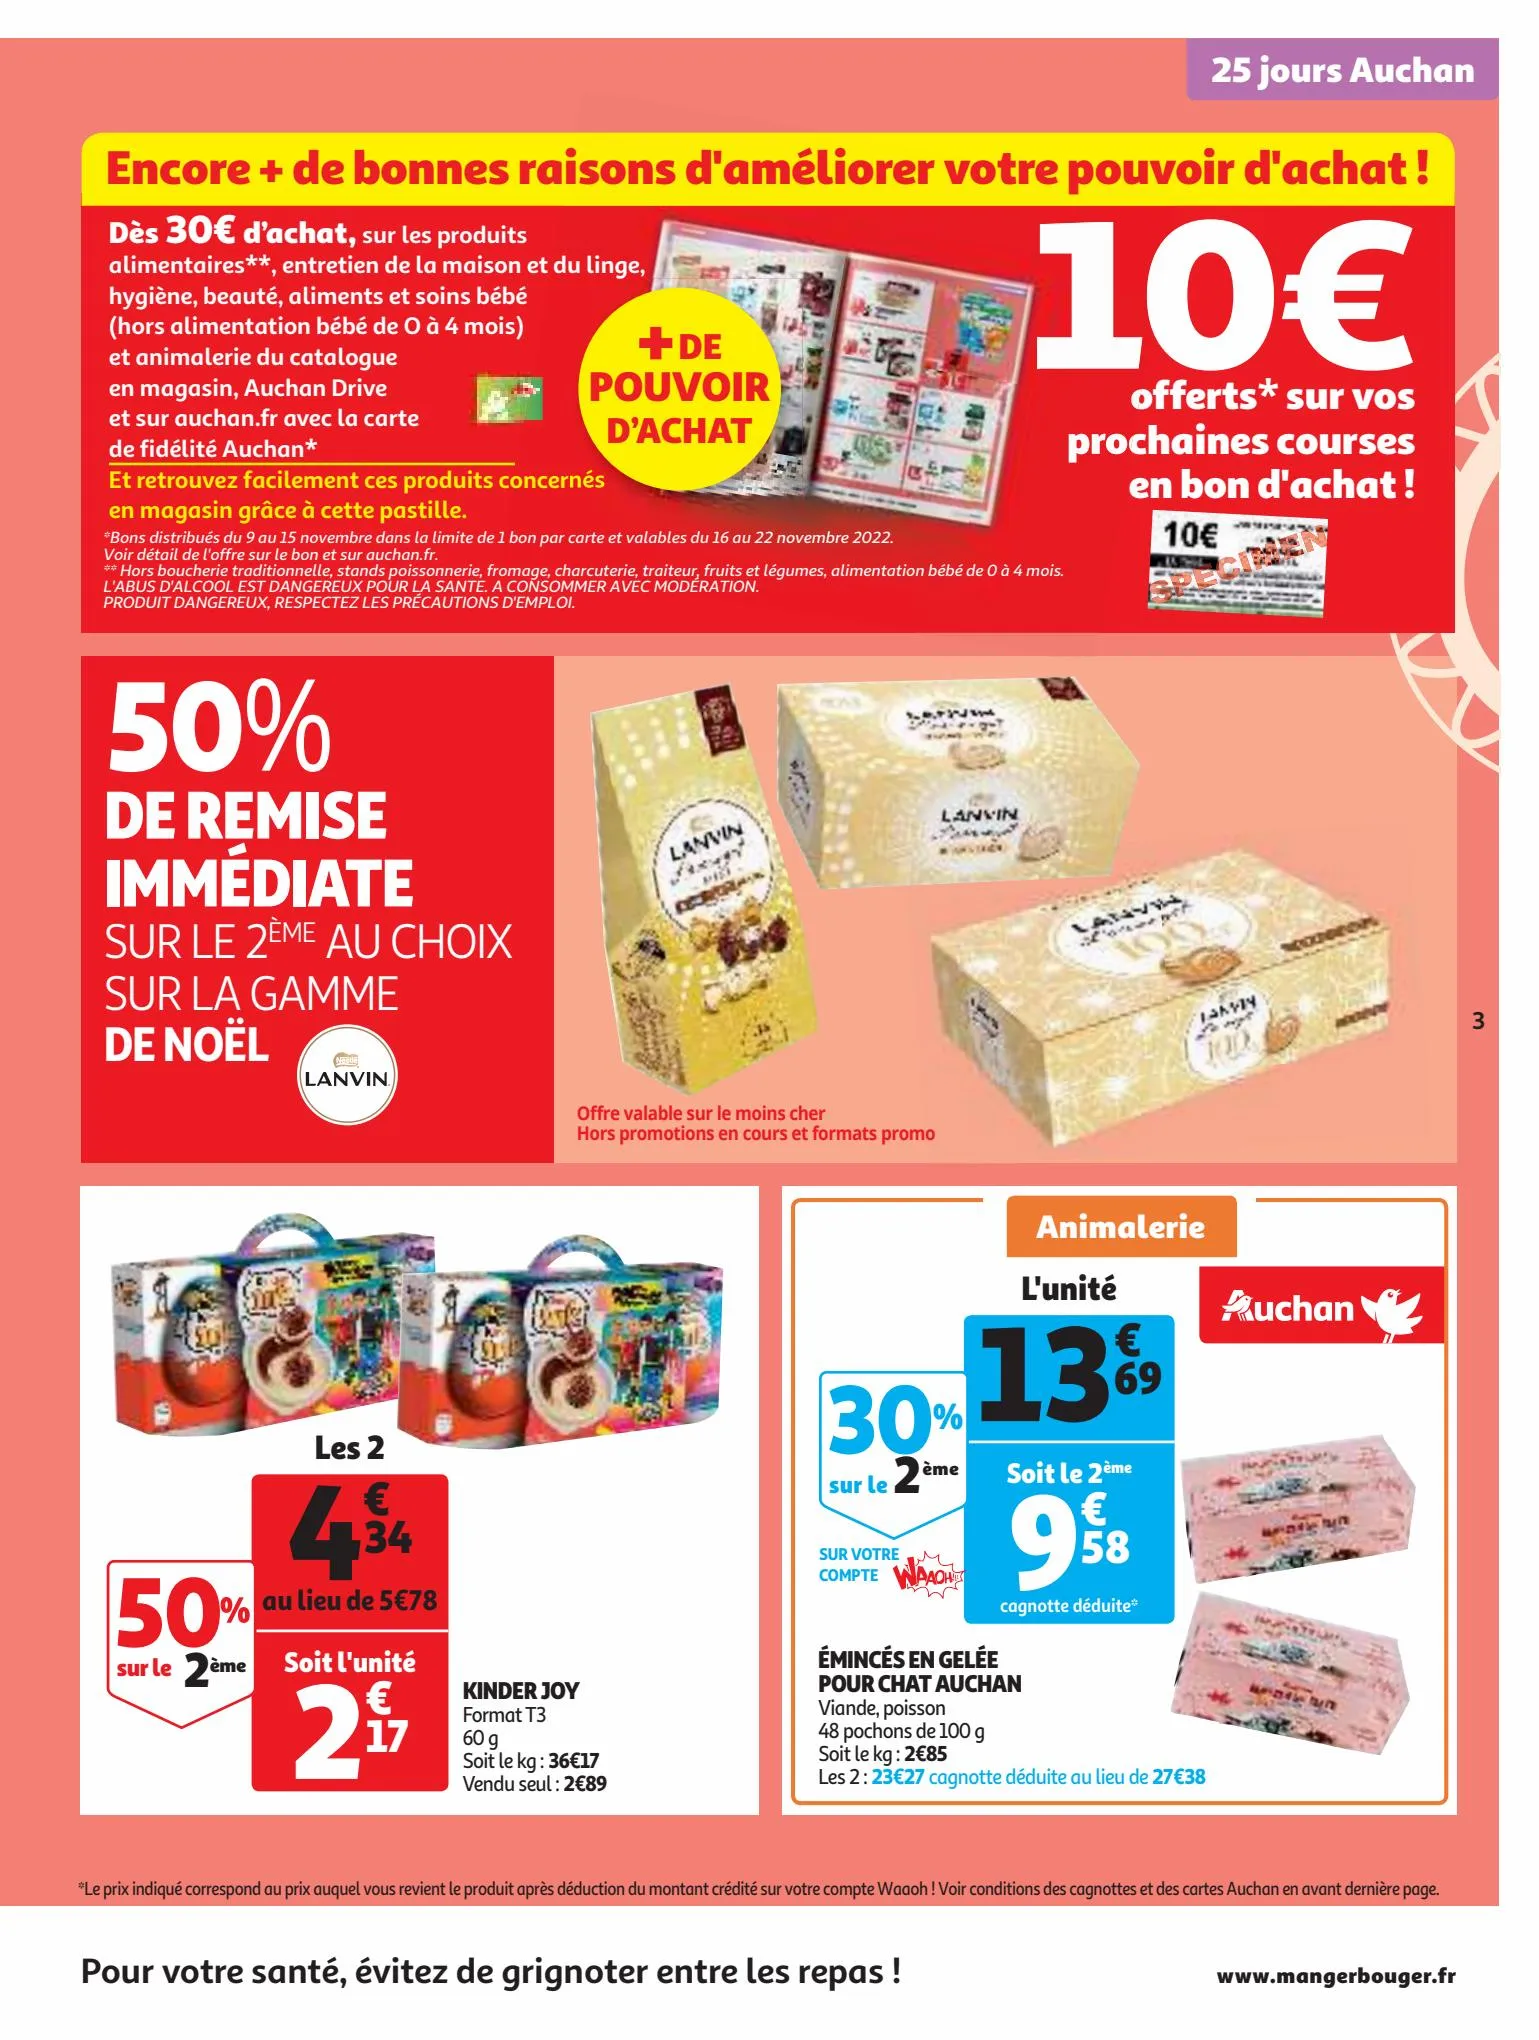 Catalogue 25 Jours Auchan, page 00003